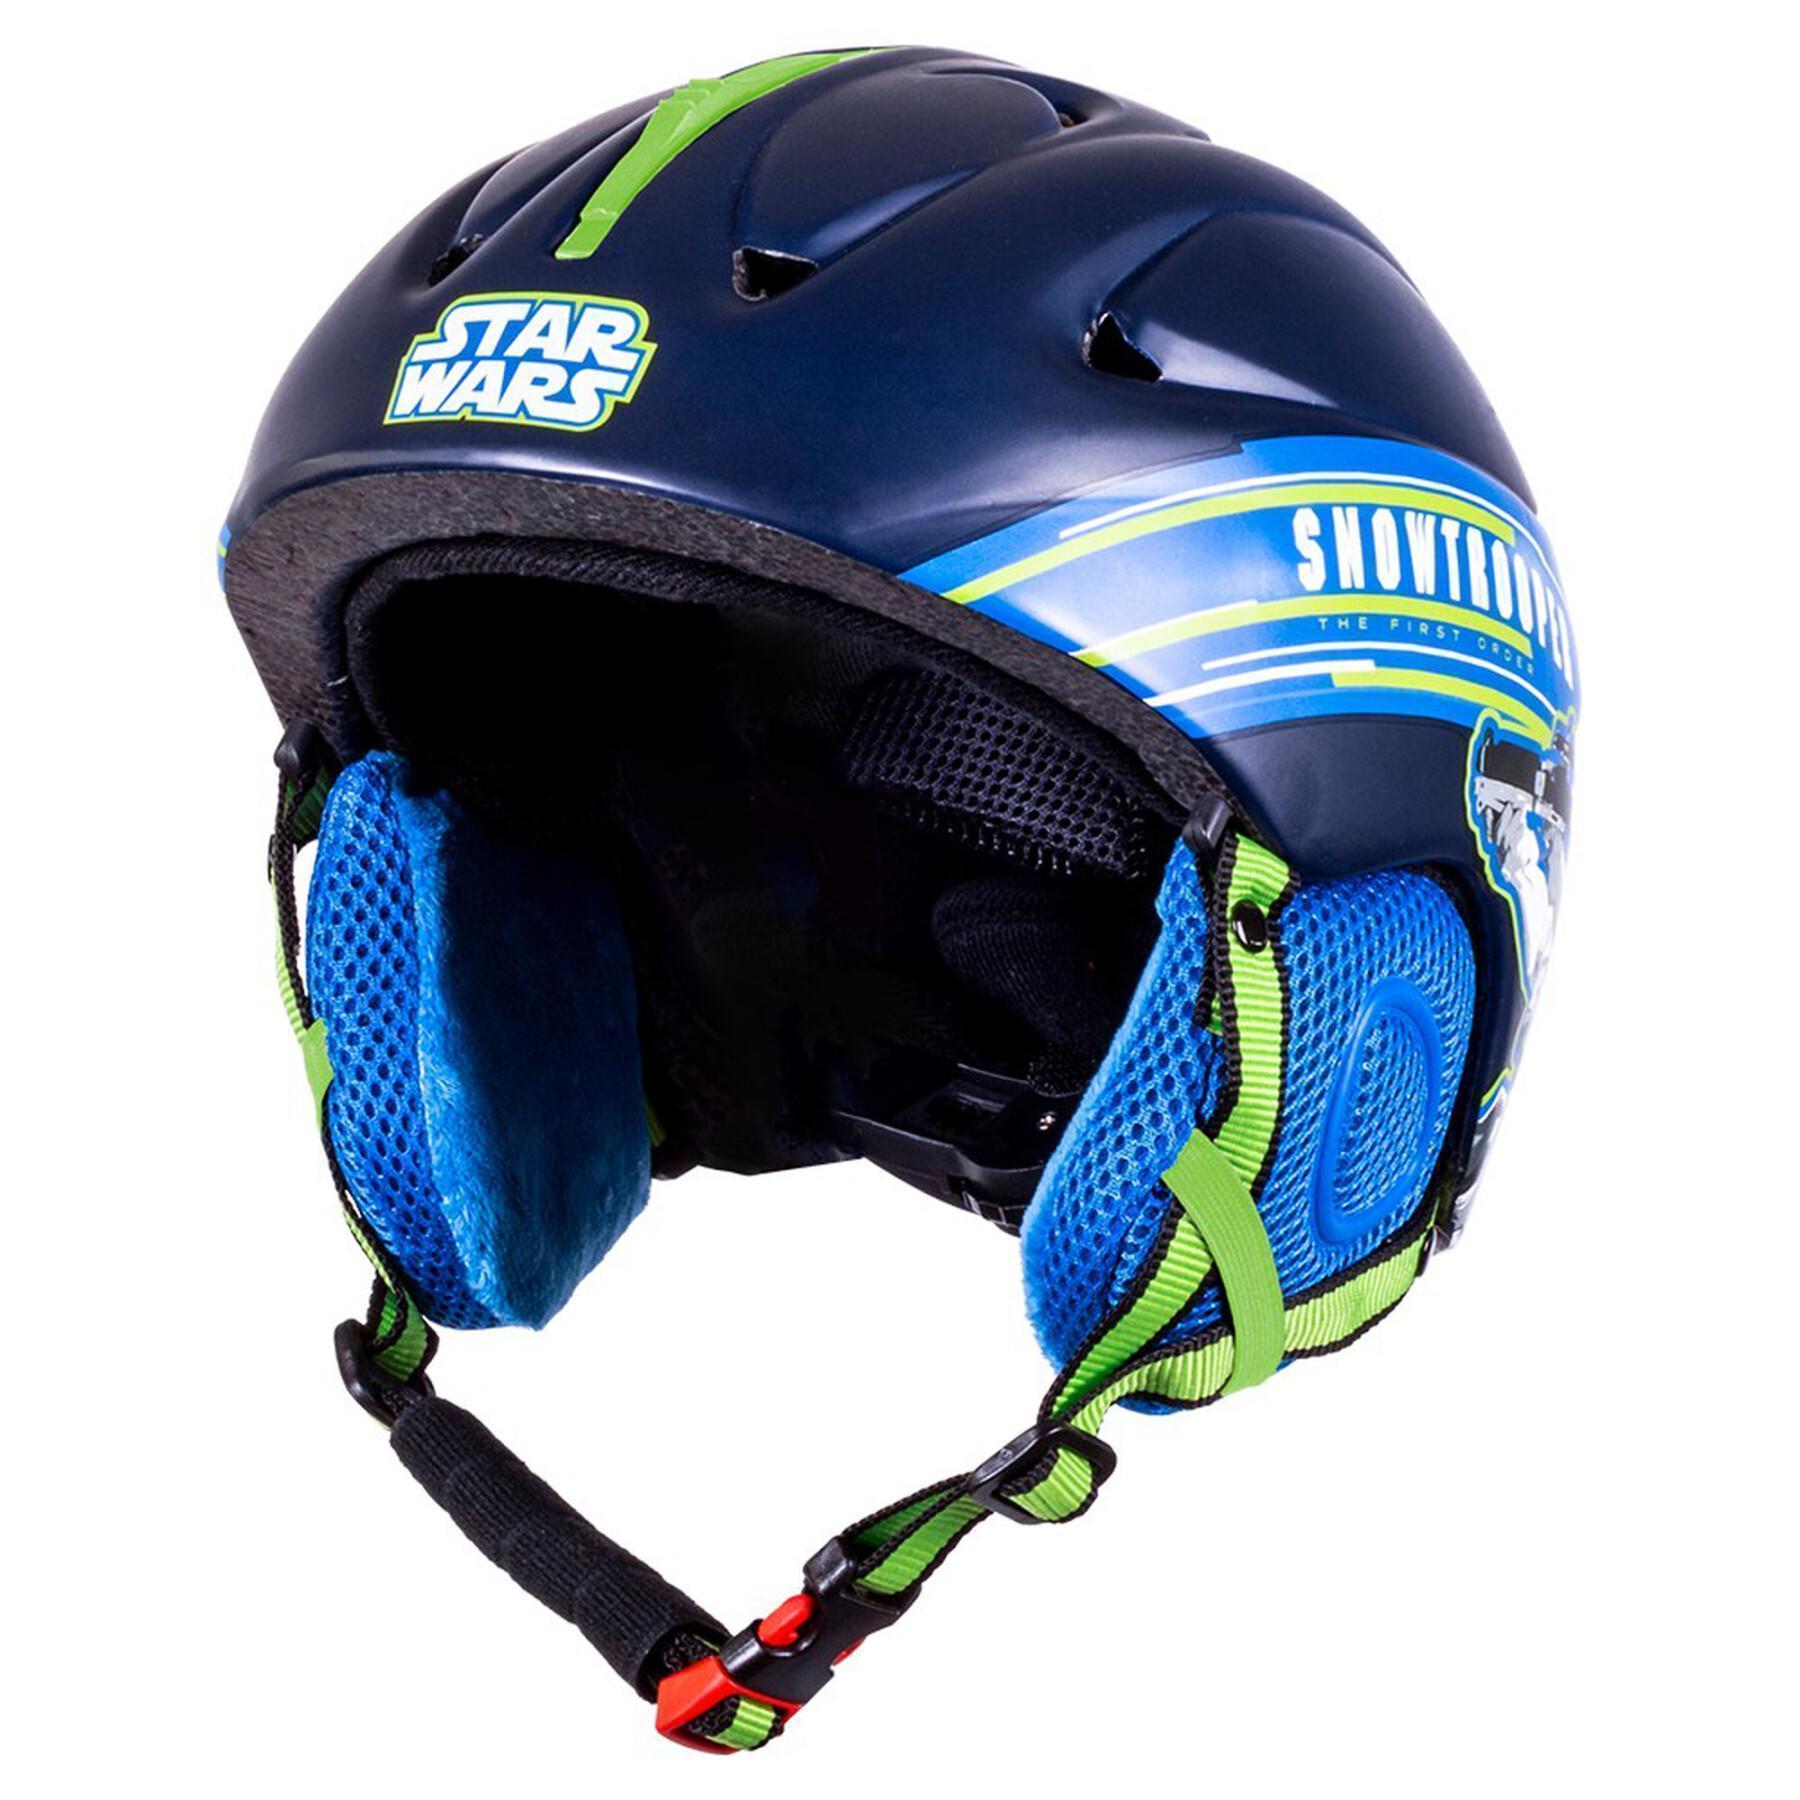 Kinder-Ski-Helm Seven Star Wars